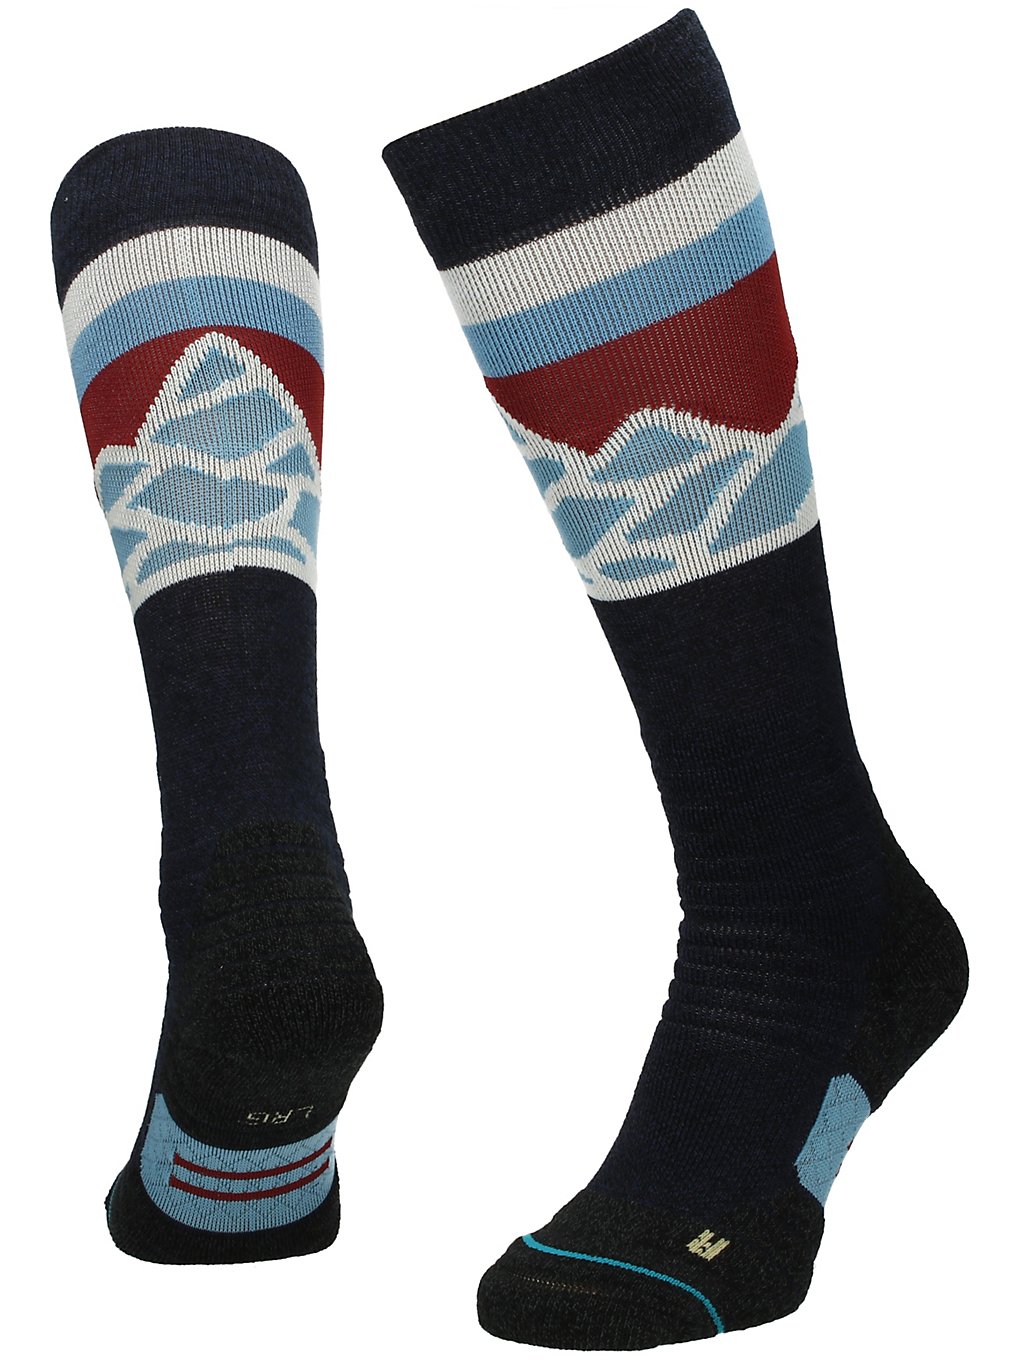 Stance Spillway Snow Tech Socks bleu